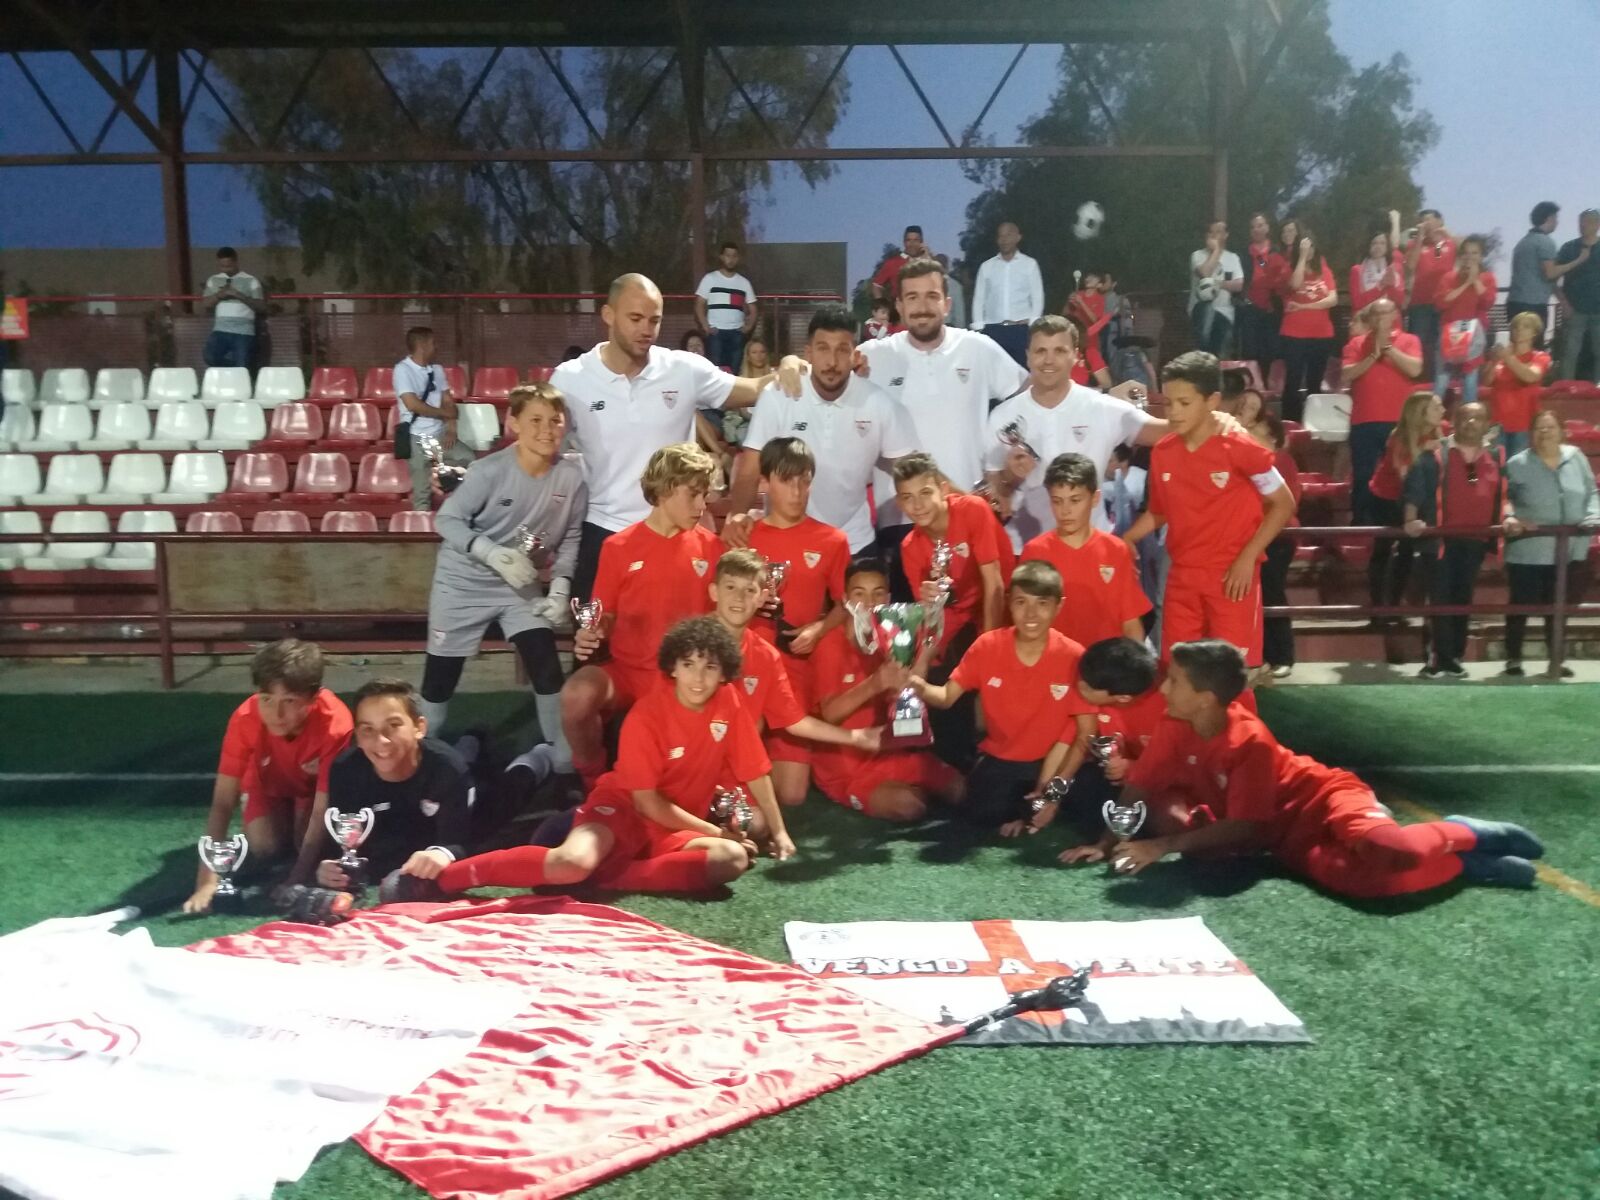 El Sevilla FC Alevín campeón de Sevilla